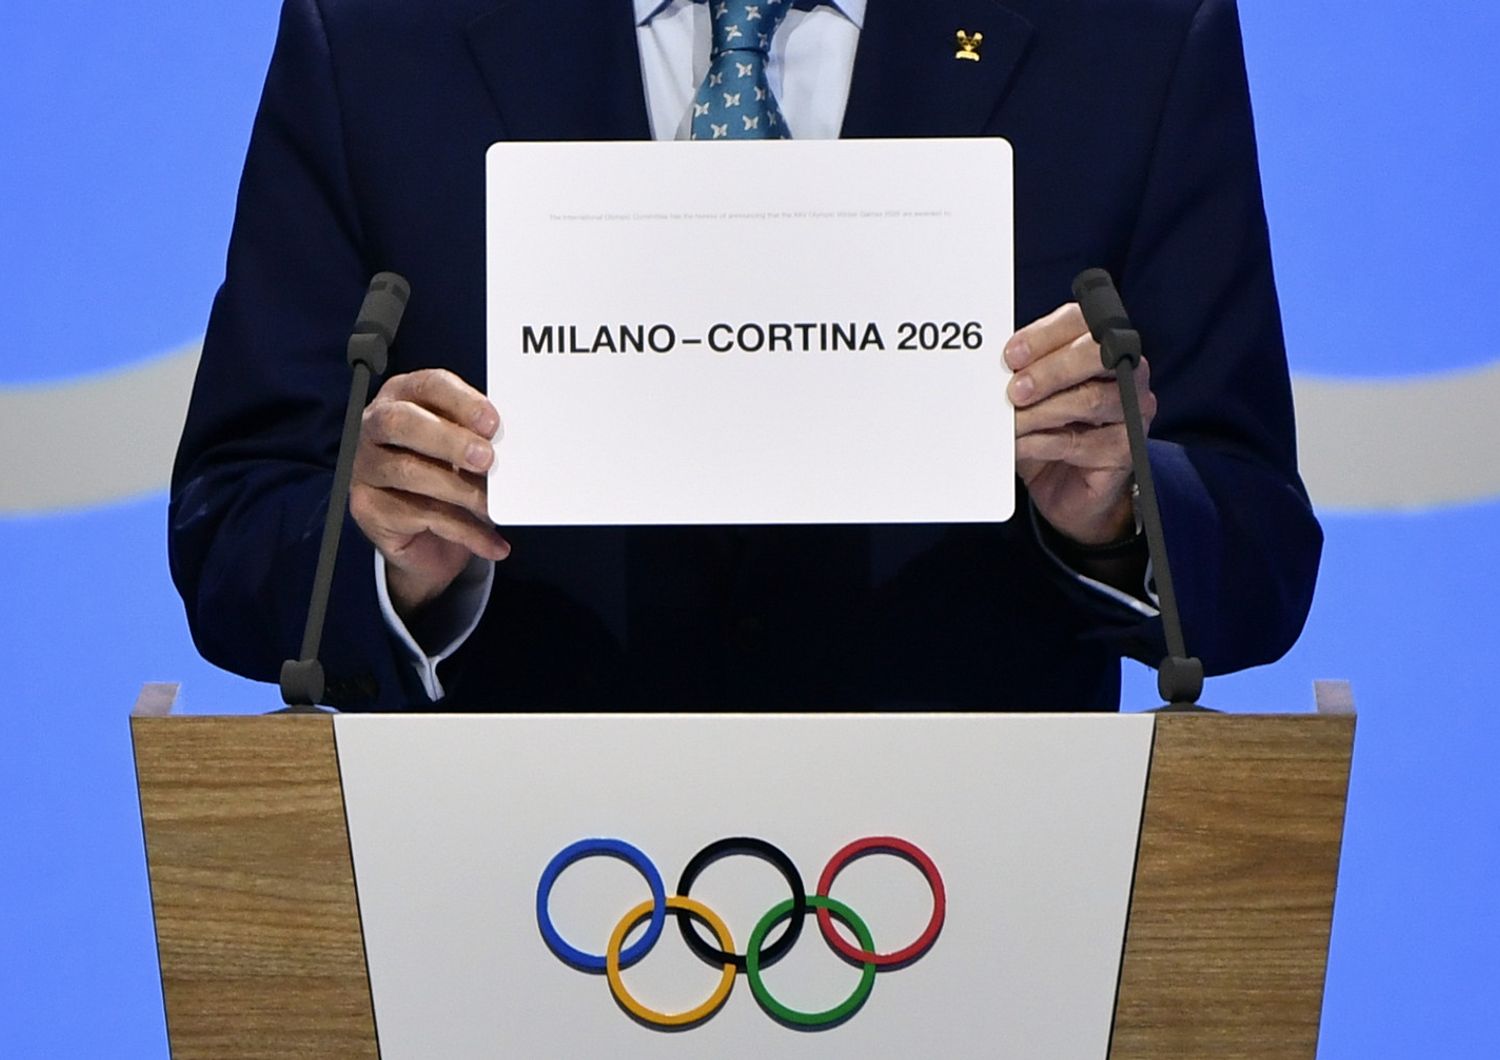 Il momento dell'assegnazione delle Olimpiadi invernali 2026 a Milano-Cortina